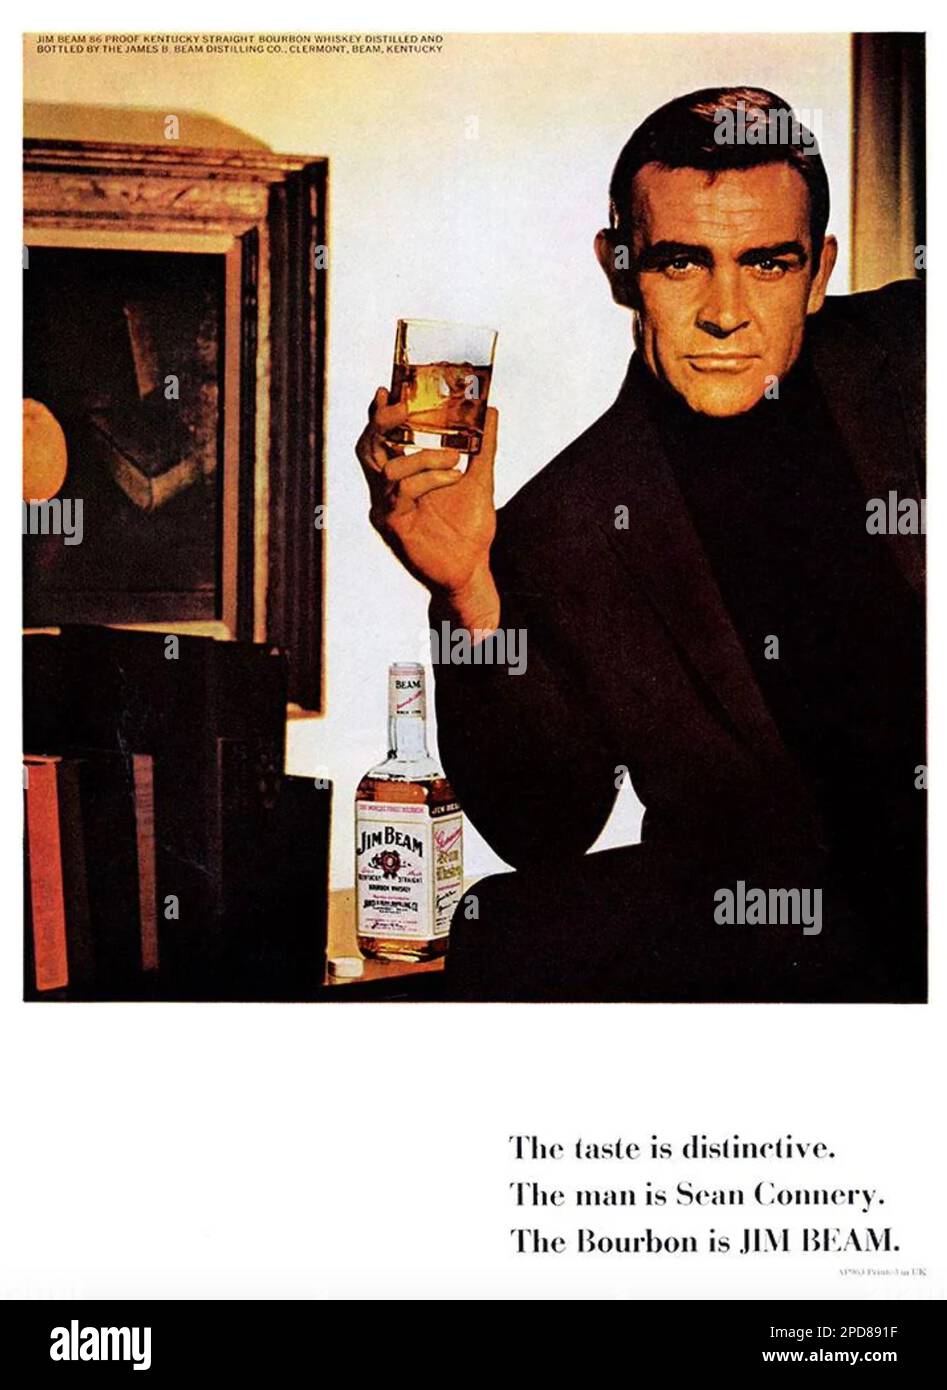 JIM BEAM publicité américaine de whisky avec Sean Connery vers 1966 Banque D'Images